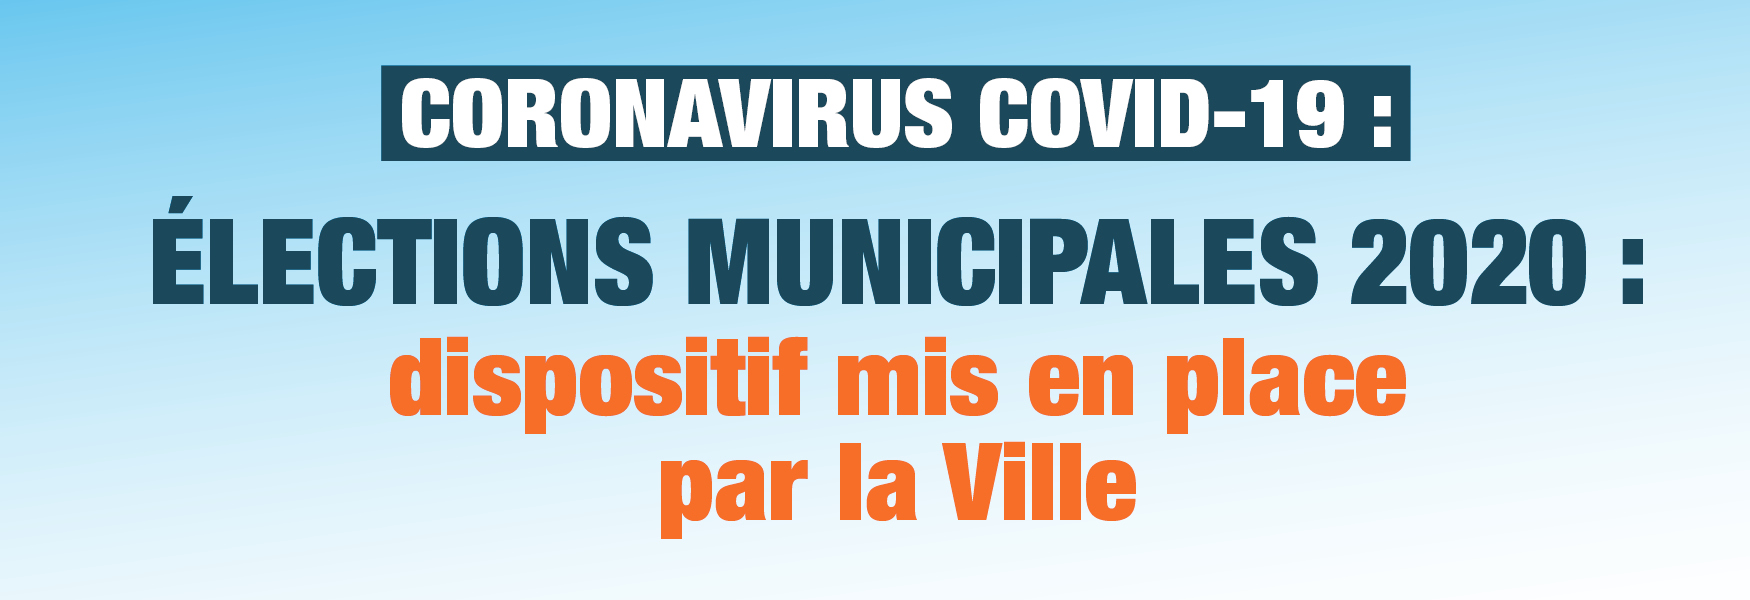 CORONAVIRUS : dispositif pour les élections municipales